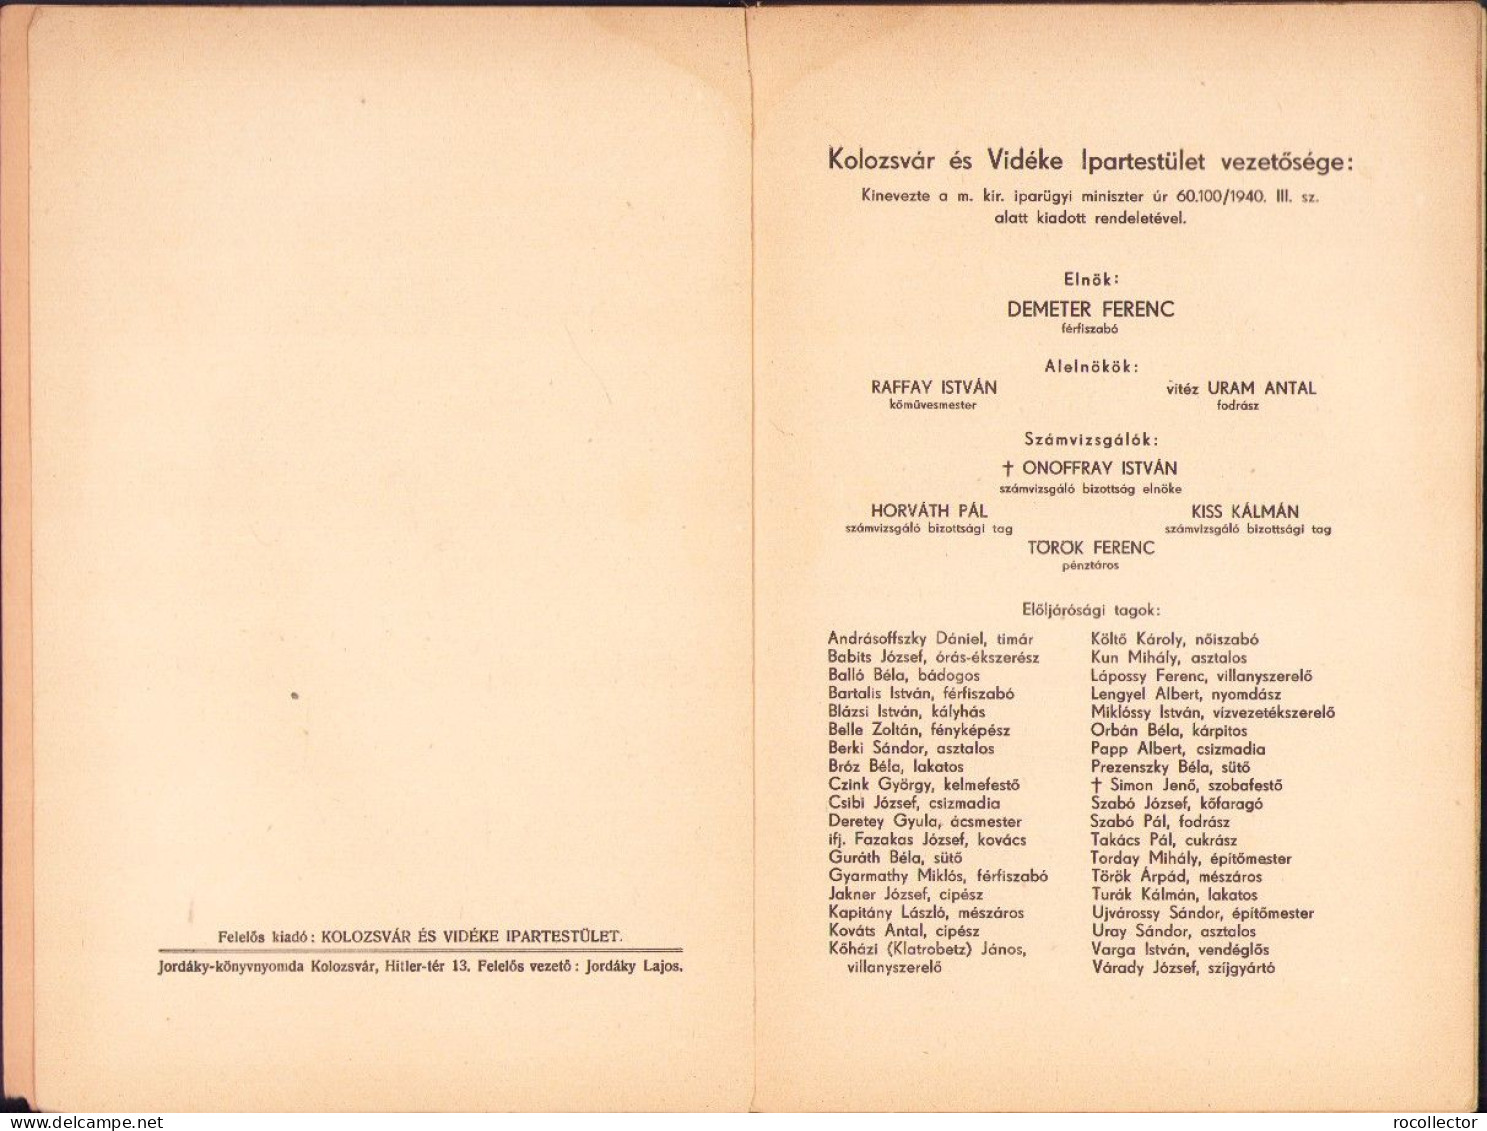 Kolozsvár és Vidéke Ipartestület 1941 évi Jelentés, 1942 722SPN - Old Books